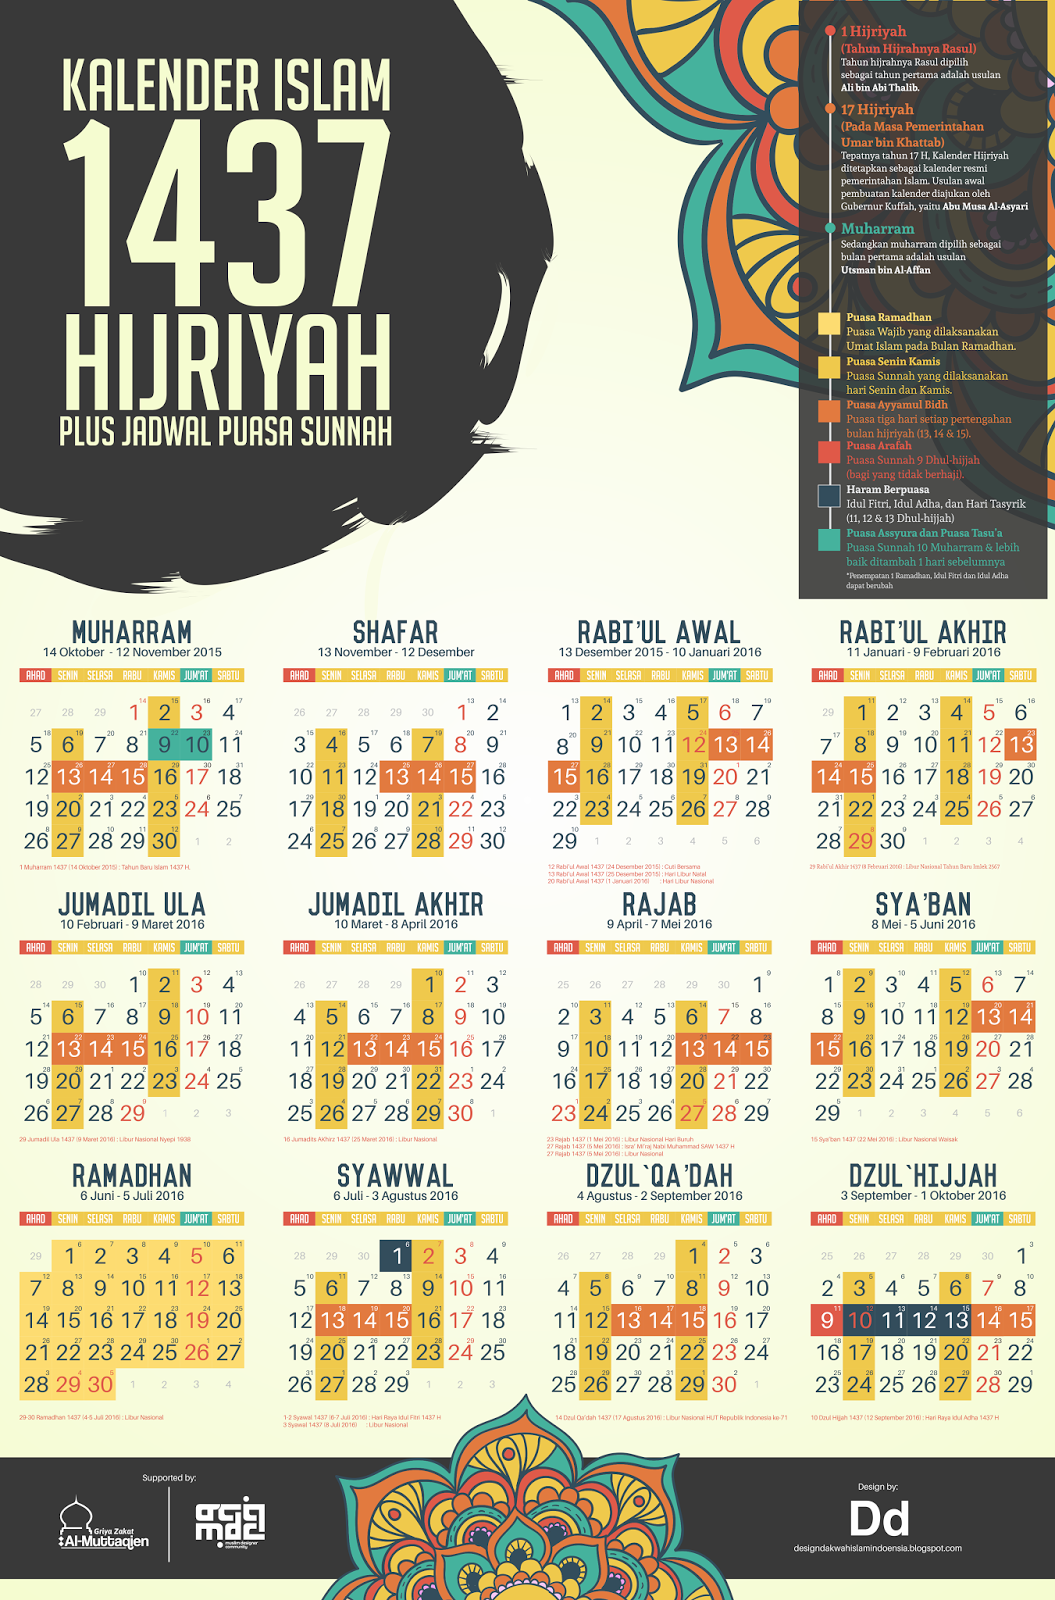 Kalender 1437 Hijriyah Gratis Download - Design Dakwah